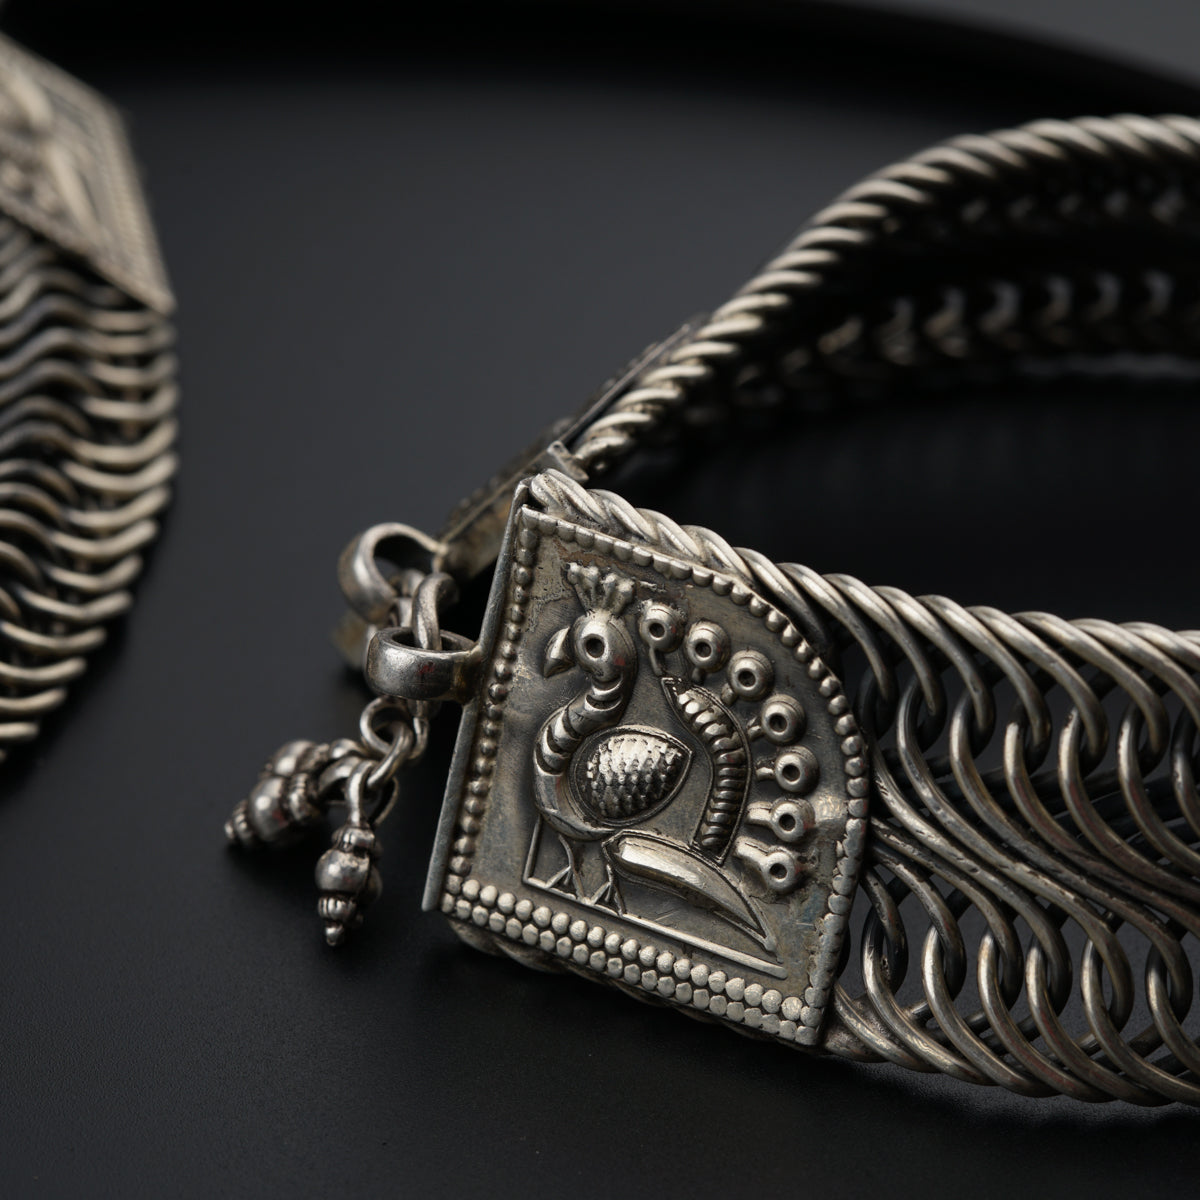 a close up of a silver bracelet on a black surface